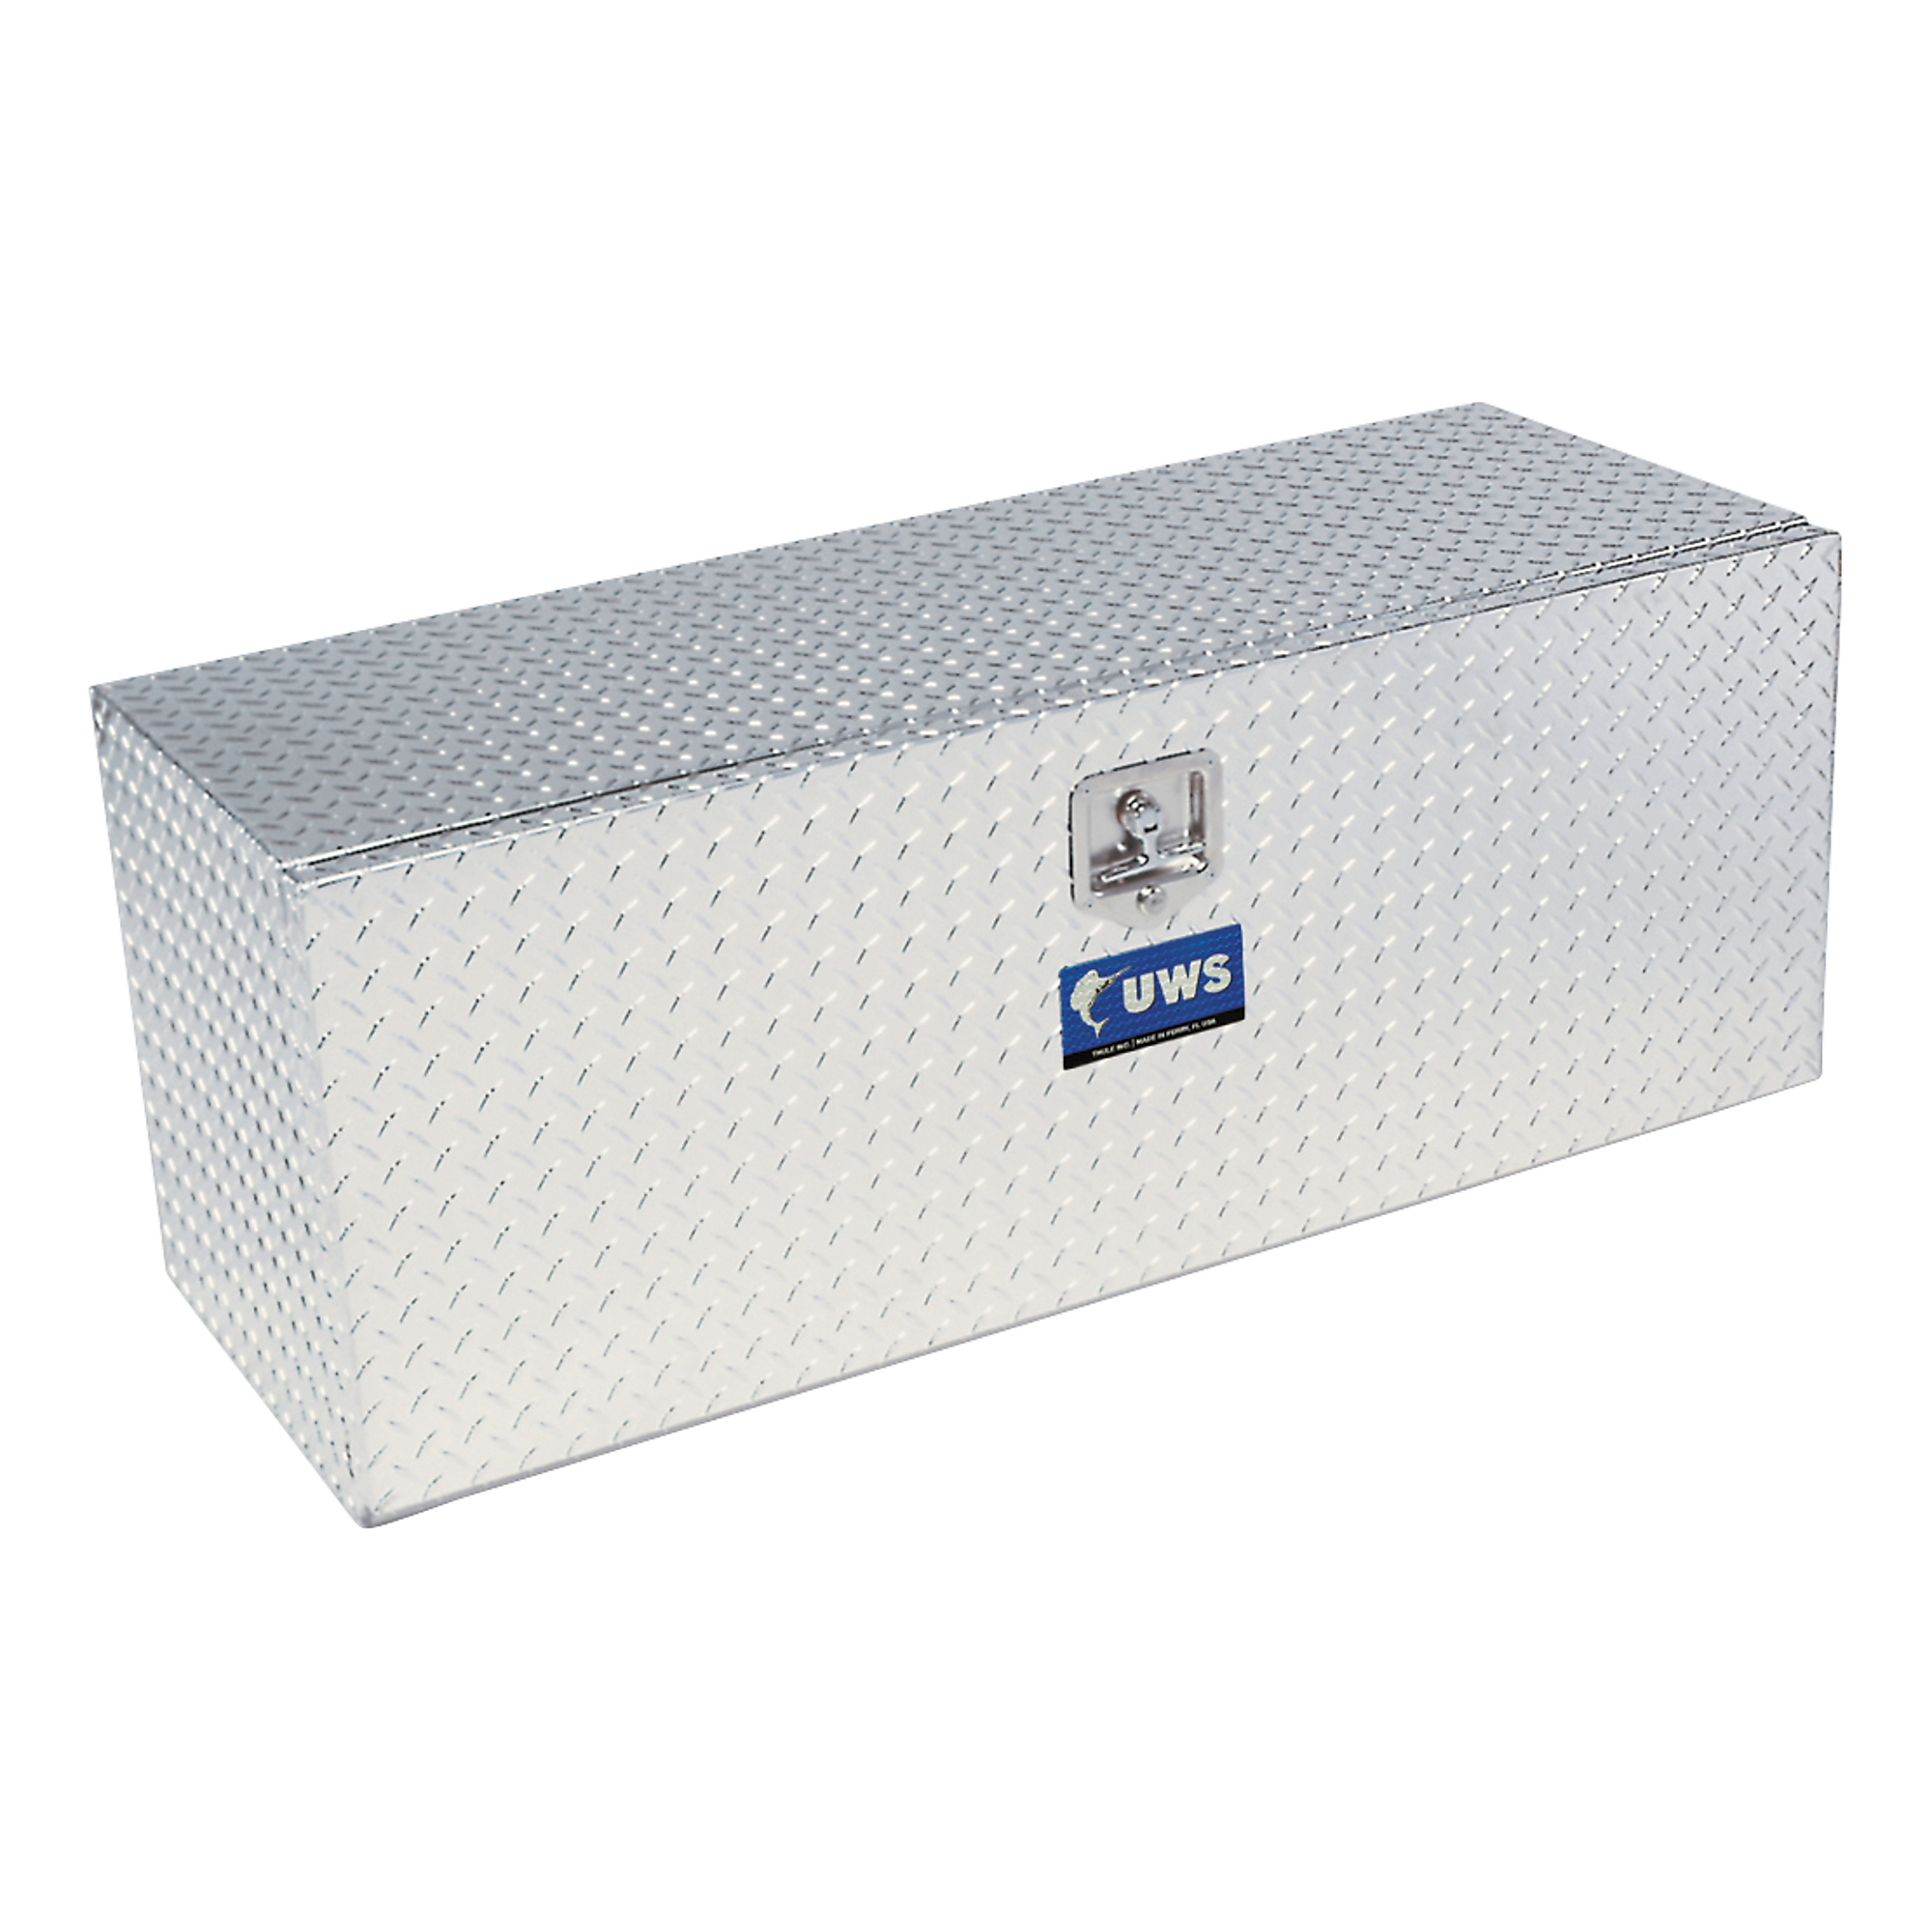 UWS, 36Inch Single-Door Underbody Tool Box, Width 36 in, Material Aluminum, Color Finish Bright Aluminum, Model EC40081